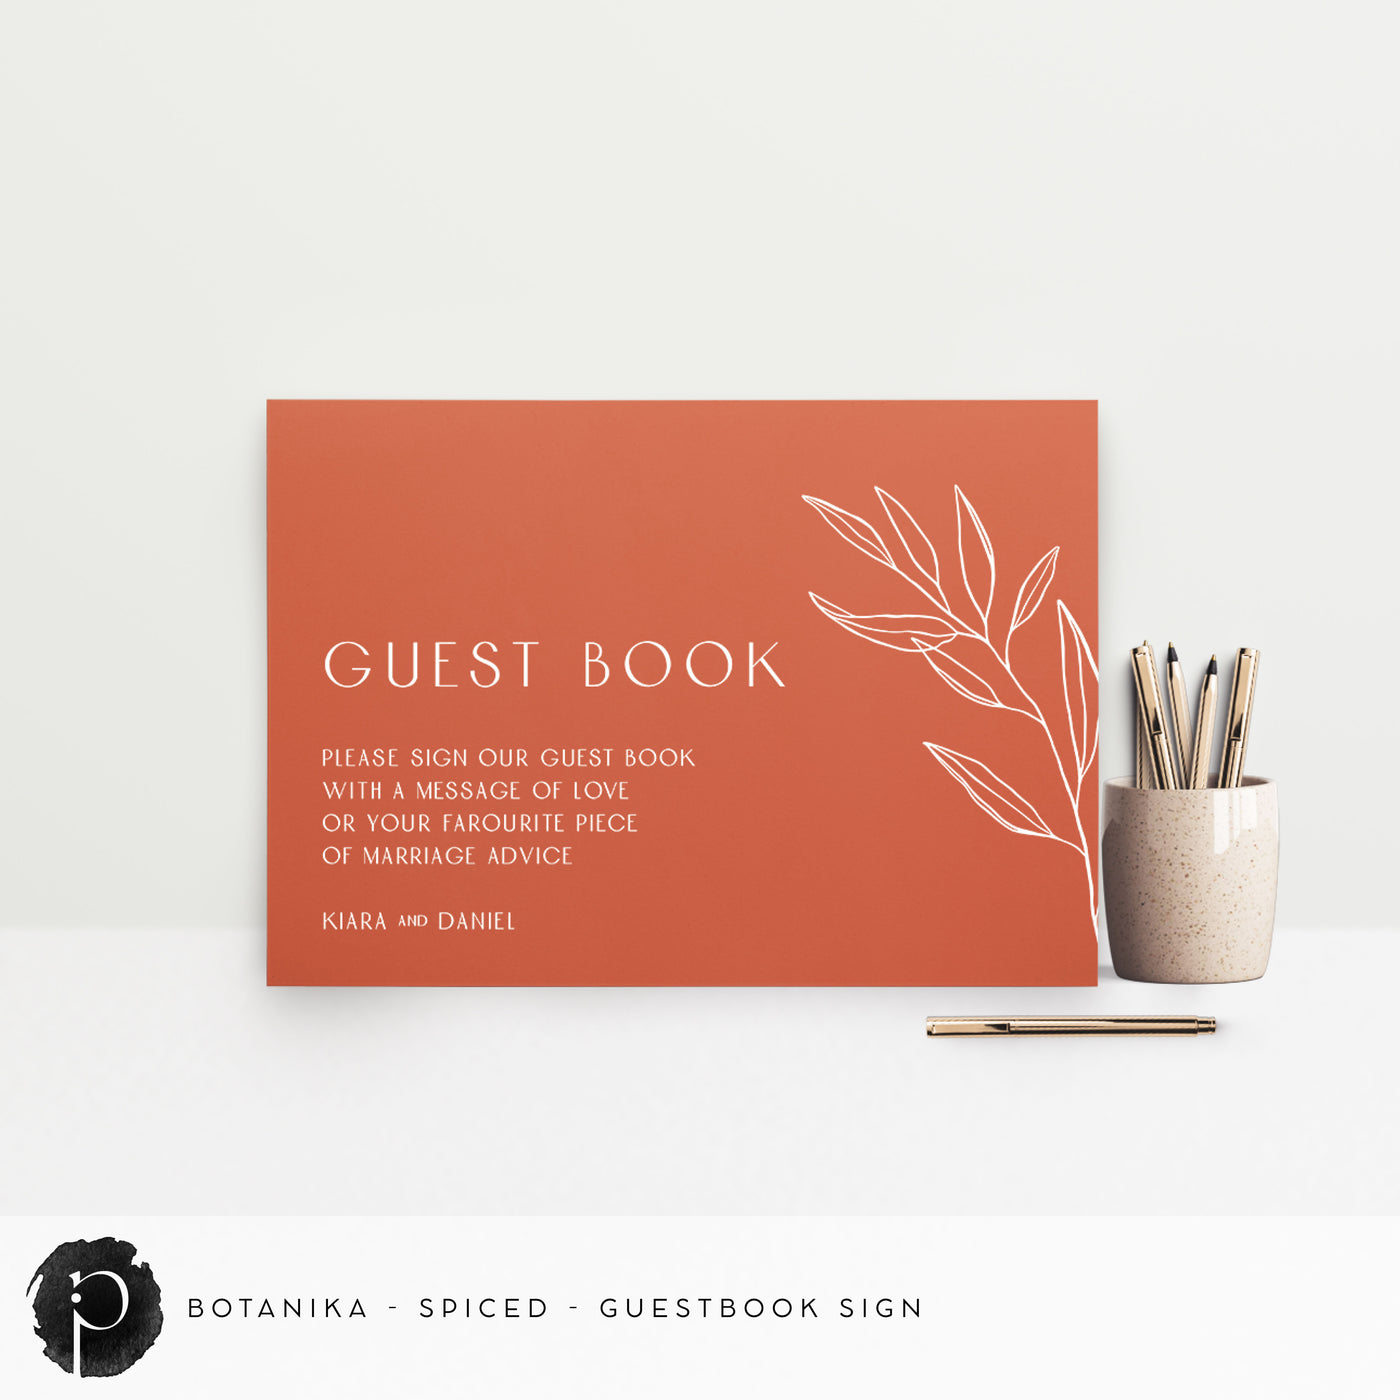 Botanika - Guestbook Sign